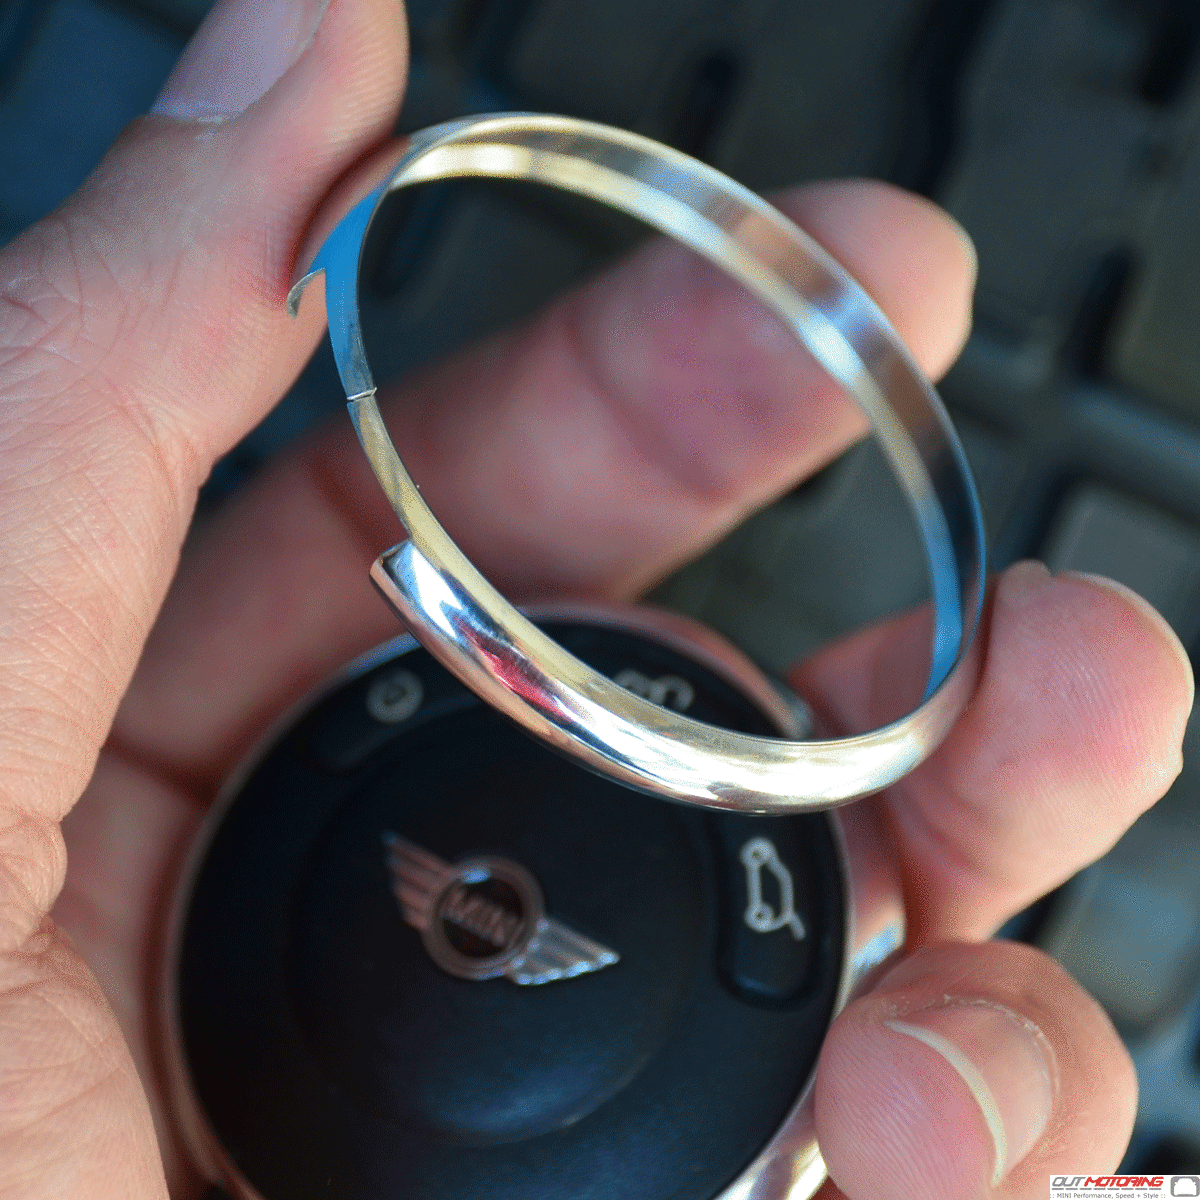 NEW UK SELLER Silver Chrome Key Fob Trim Ring Rim for Mini Cooper 2008-2013 